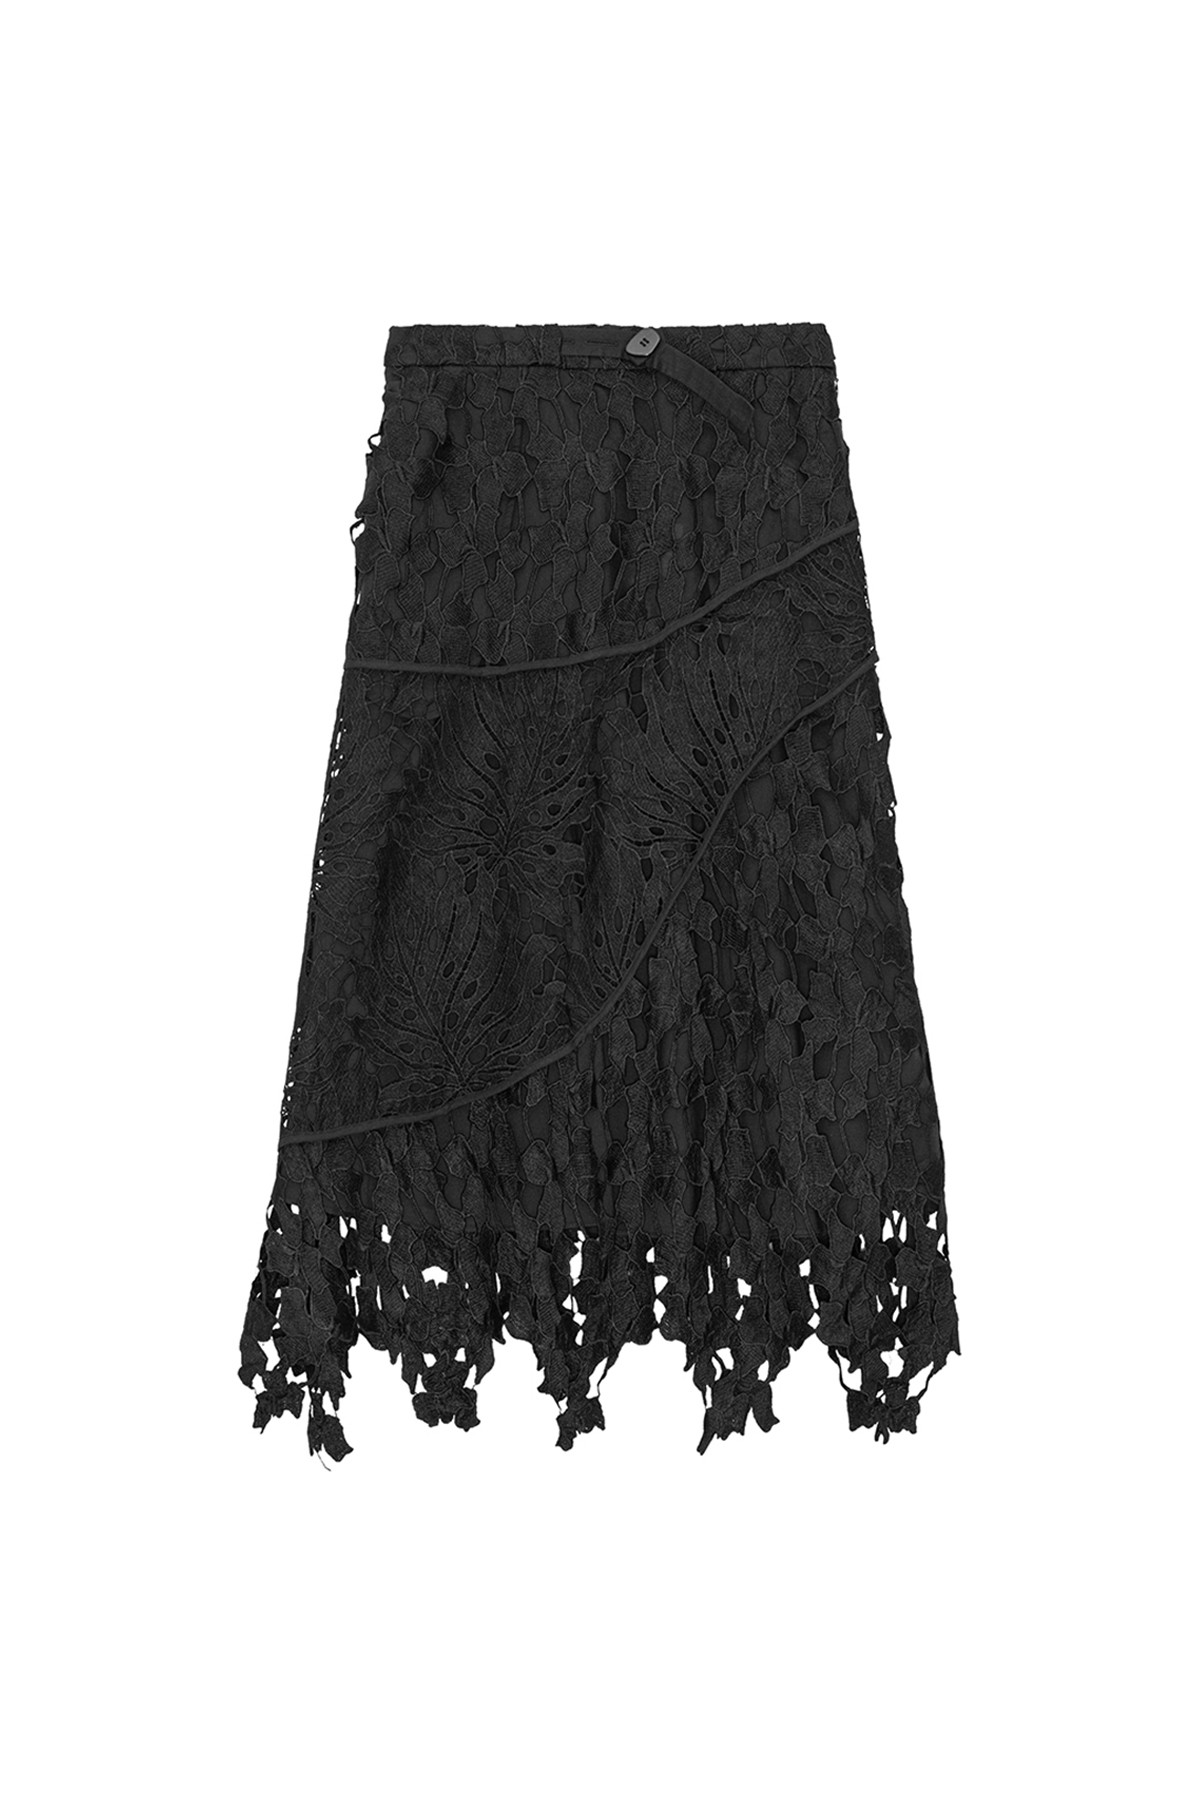 Hofmann Copenhagen Chloe Skirt - Black Heavy Lace